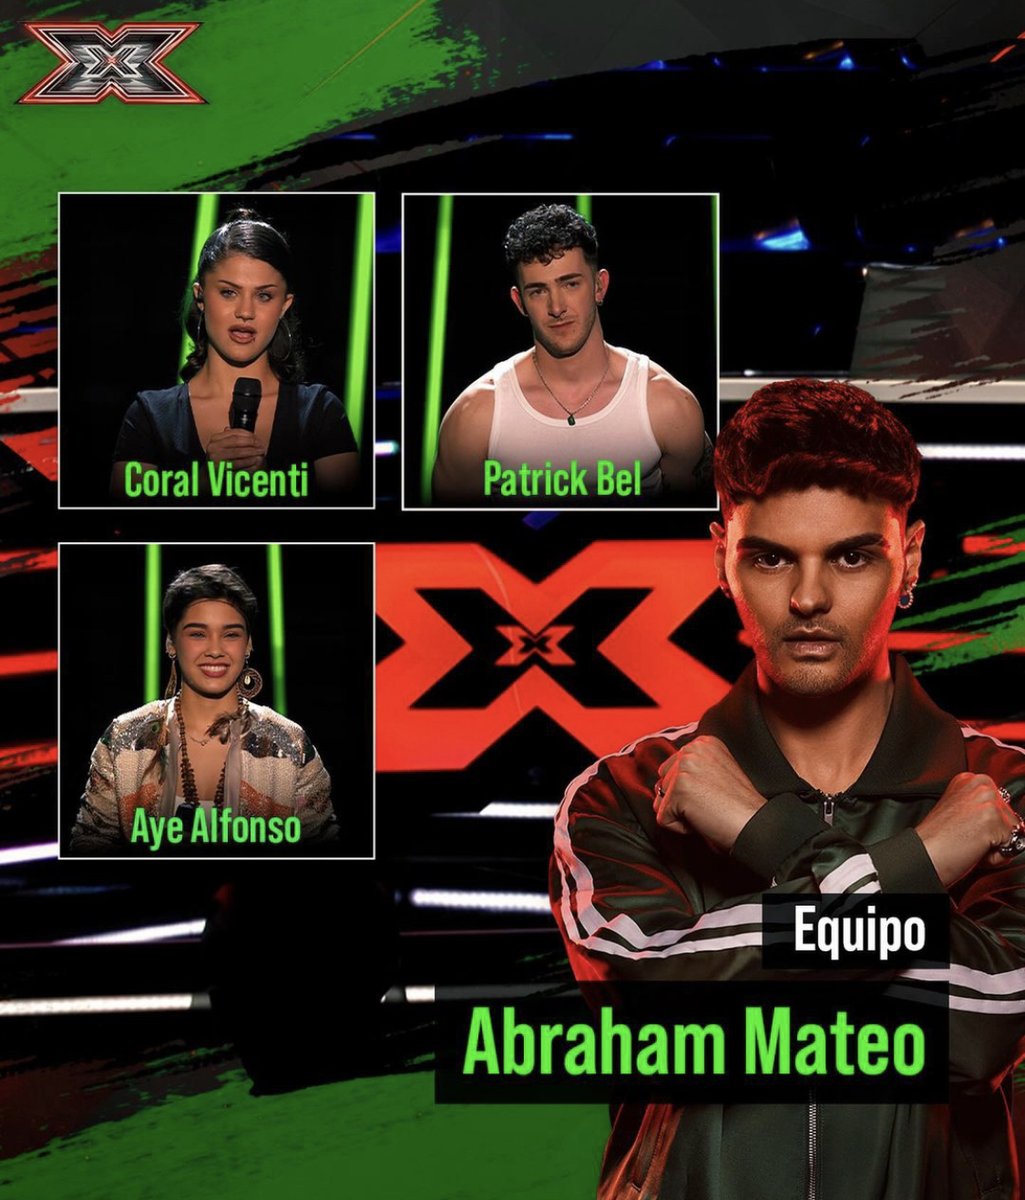 Que buena noticia, los tres concursantes del equipazo de @AbrahamMateo pasan al completo a la segunda semifinal, oleee ese artee!!! 🔥❤️🙅🏻 #FactorXDirecto #FactorX7